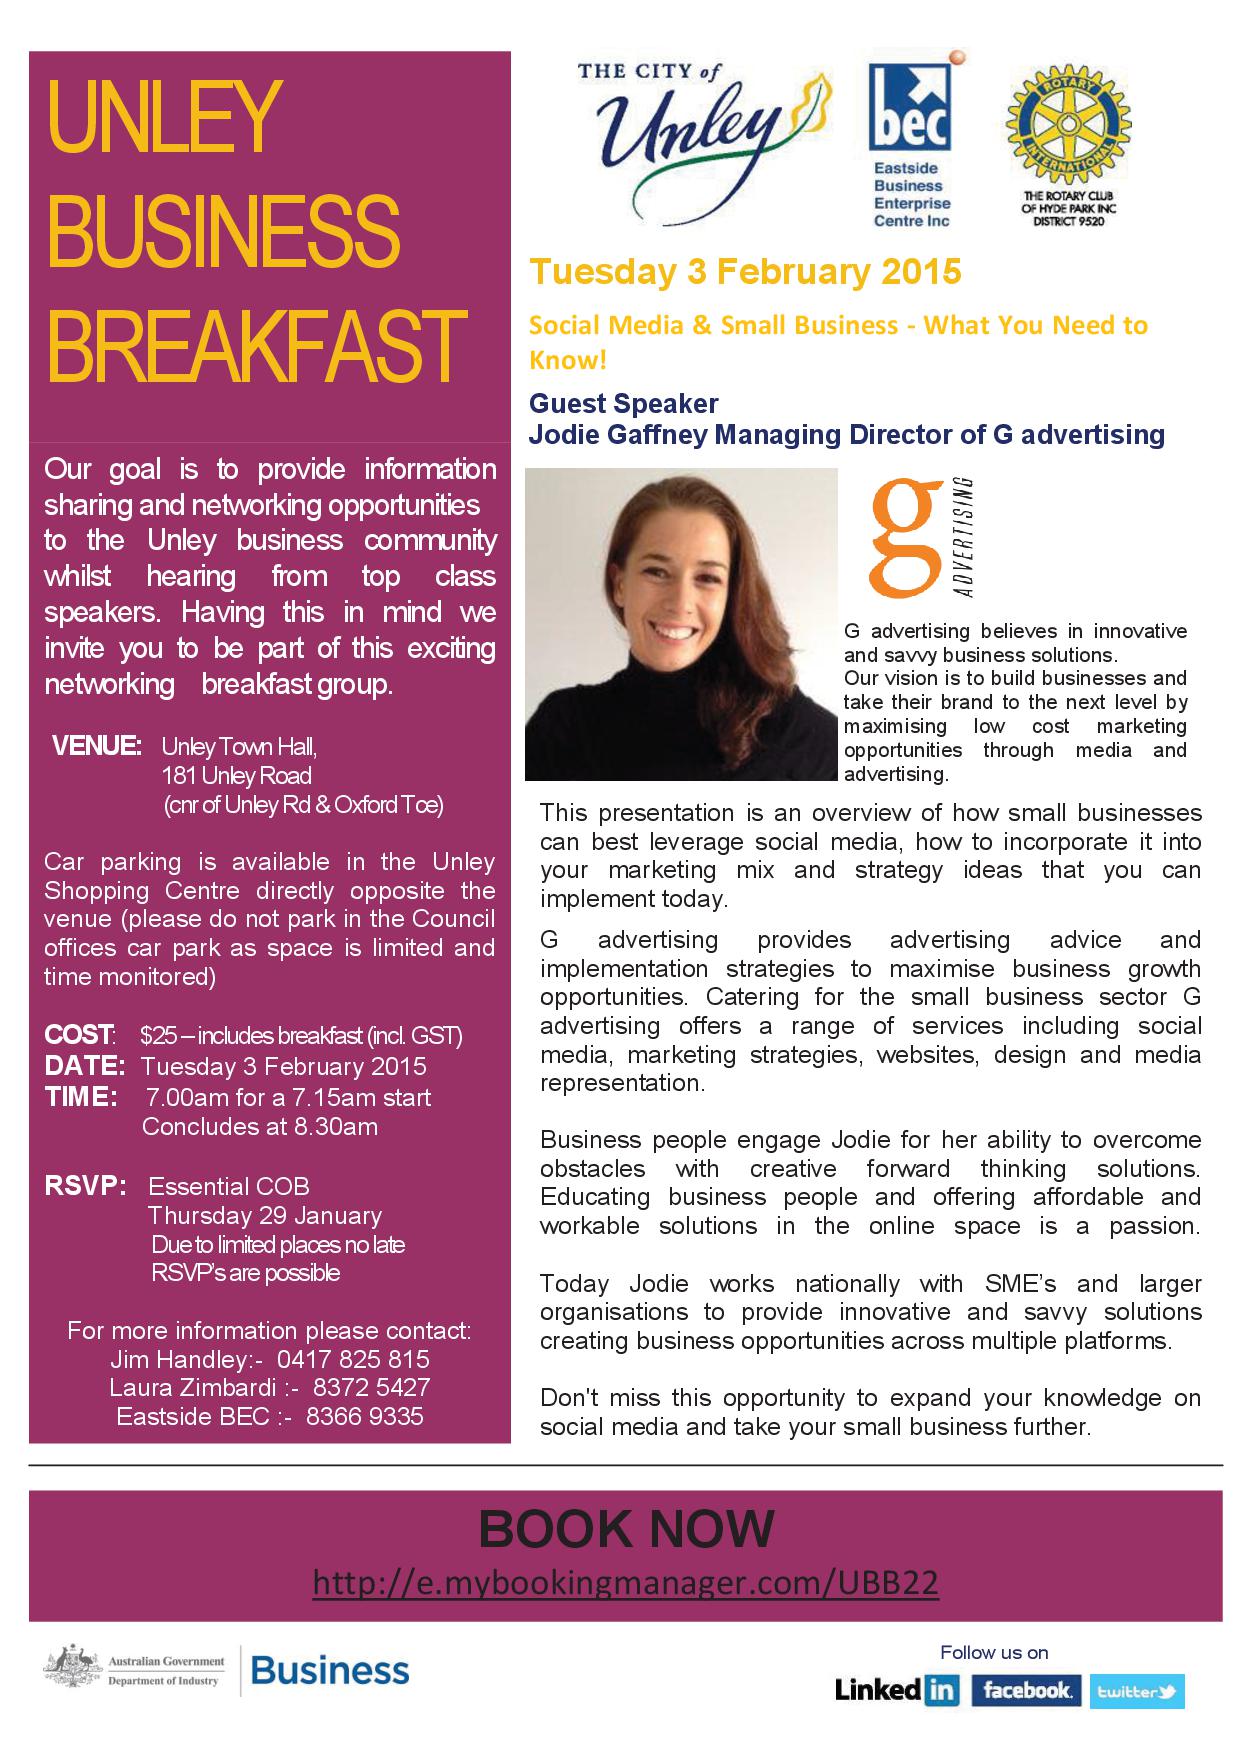 Unley Business Breakfast Flyer - 3 Feb 2015